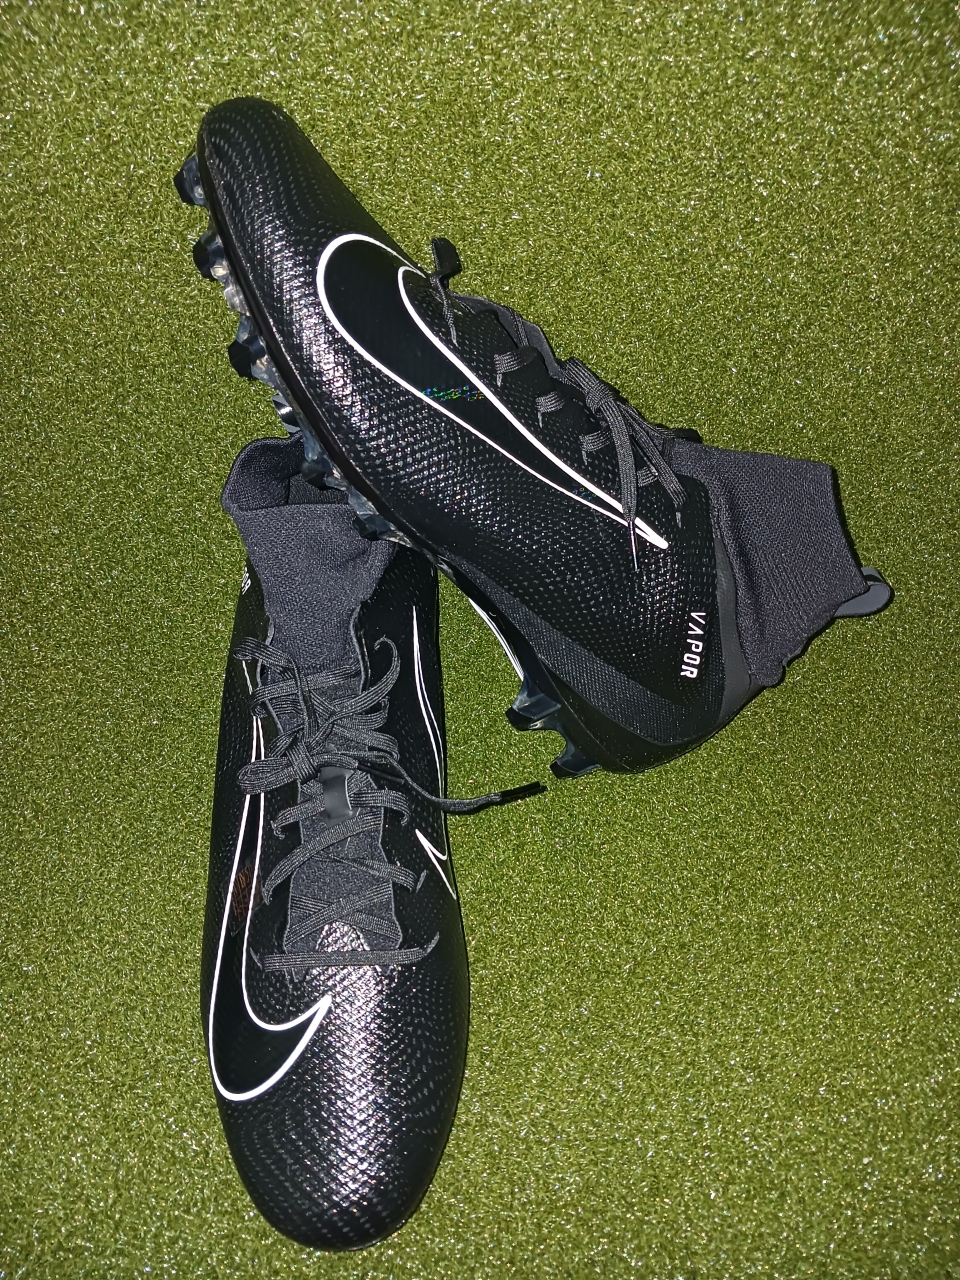 Nike Men's Vapor Untouchable Pro 3 917165-010 Black Football Cleats Size 16